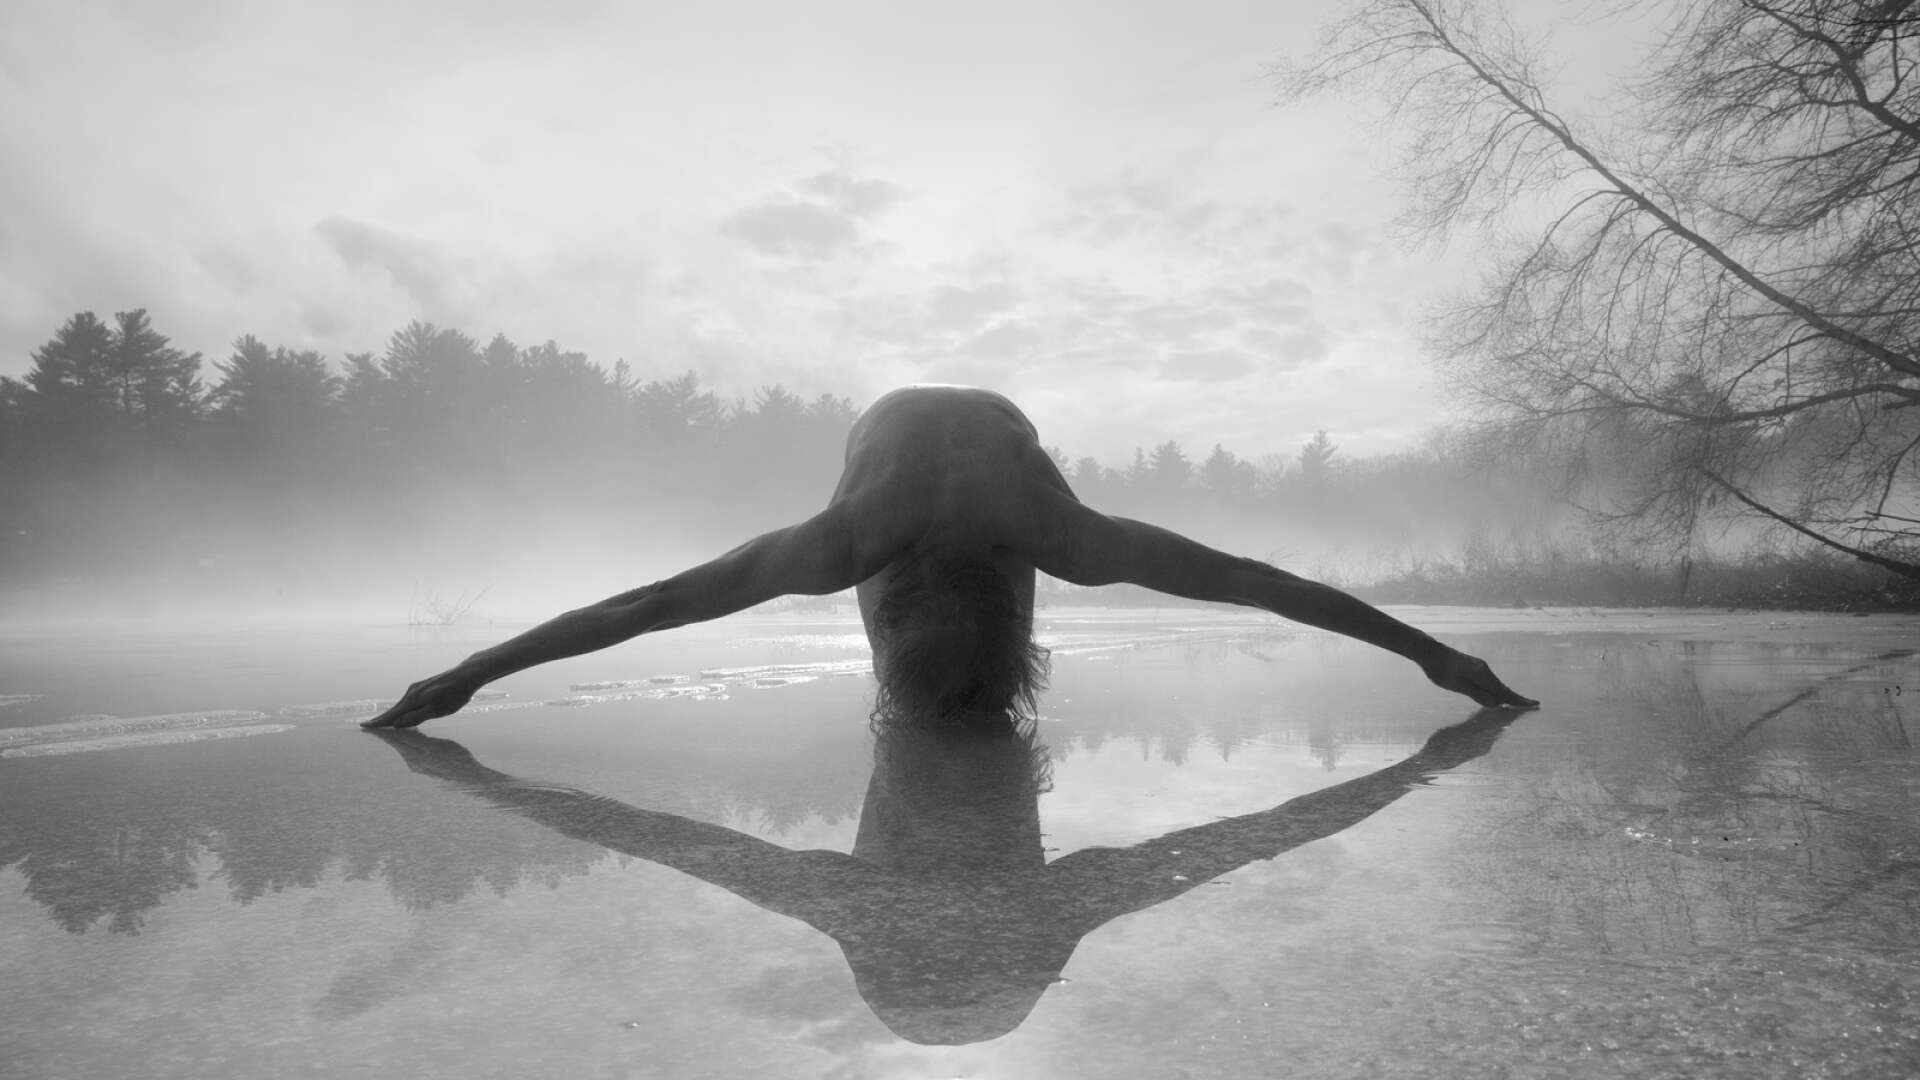 Sliperiet visar i sommar bilder av finskamerikanen Arno Rafael Minkkinen. Det här fotot har titeln ”Mouth of the River, Fosters Pond 2014”.